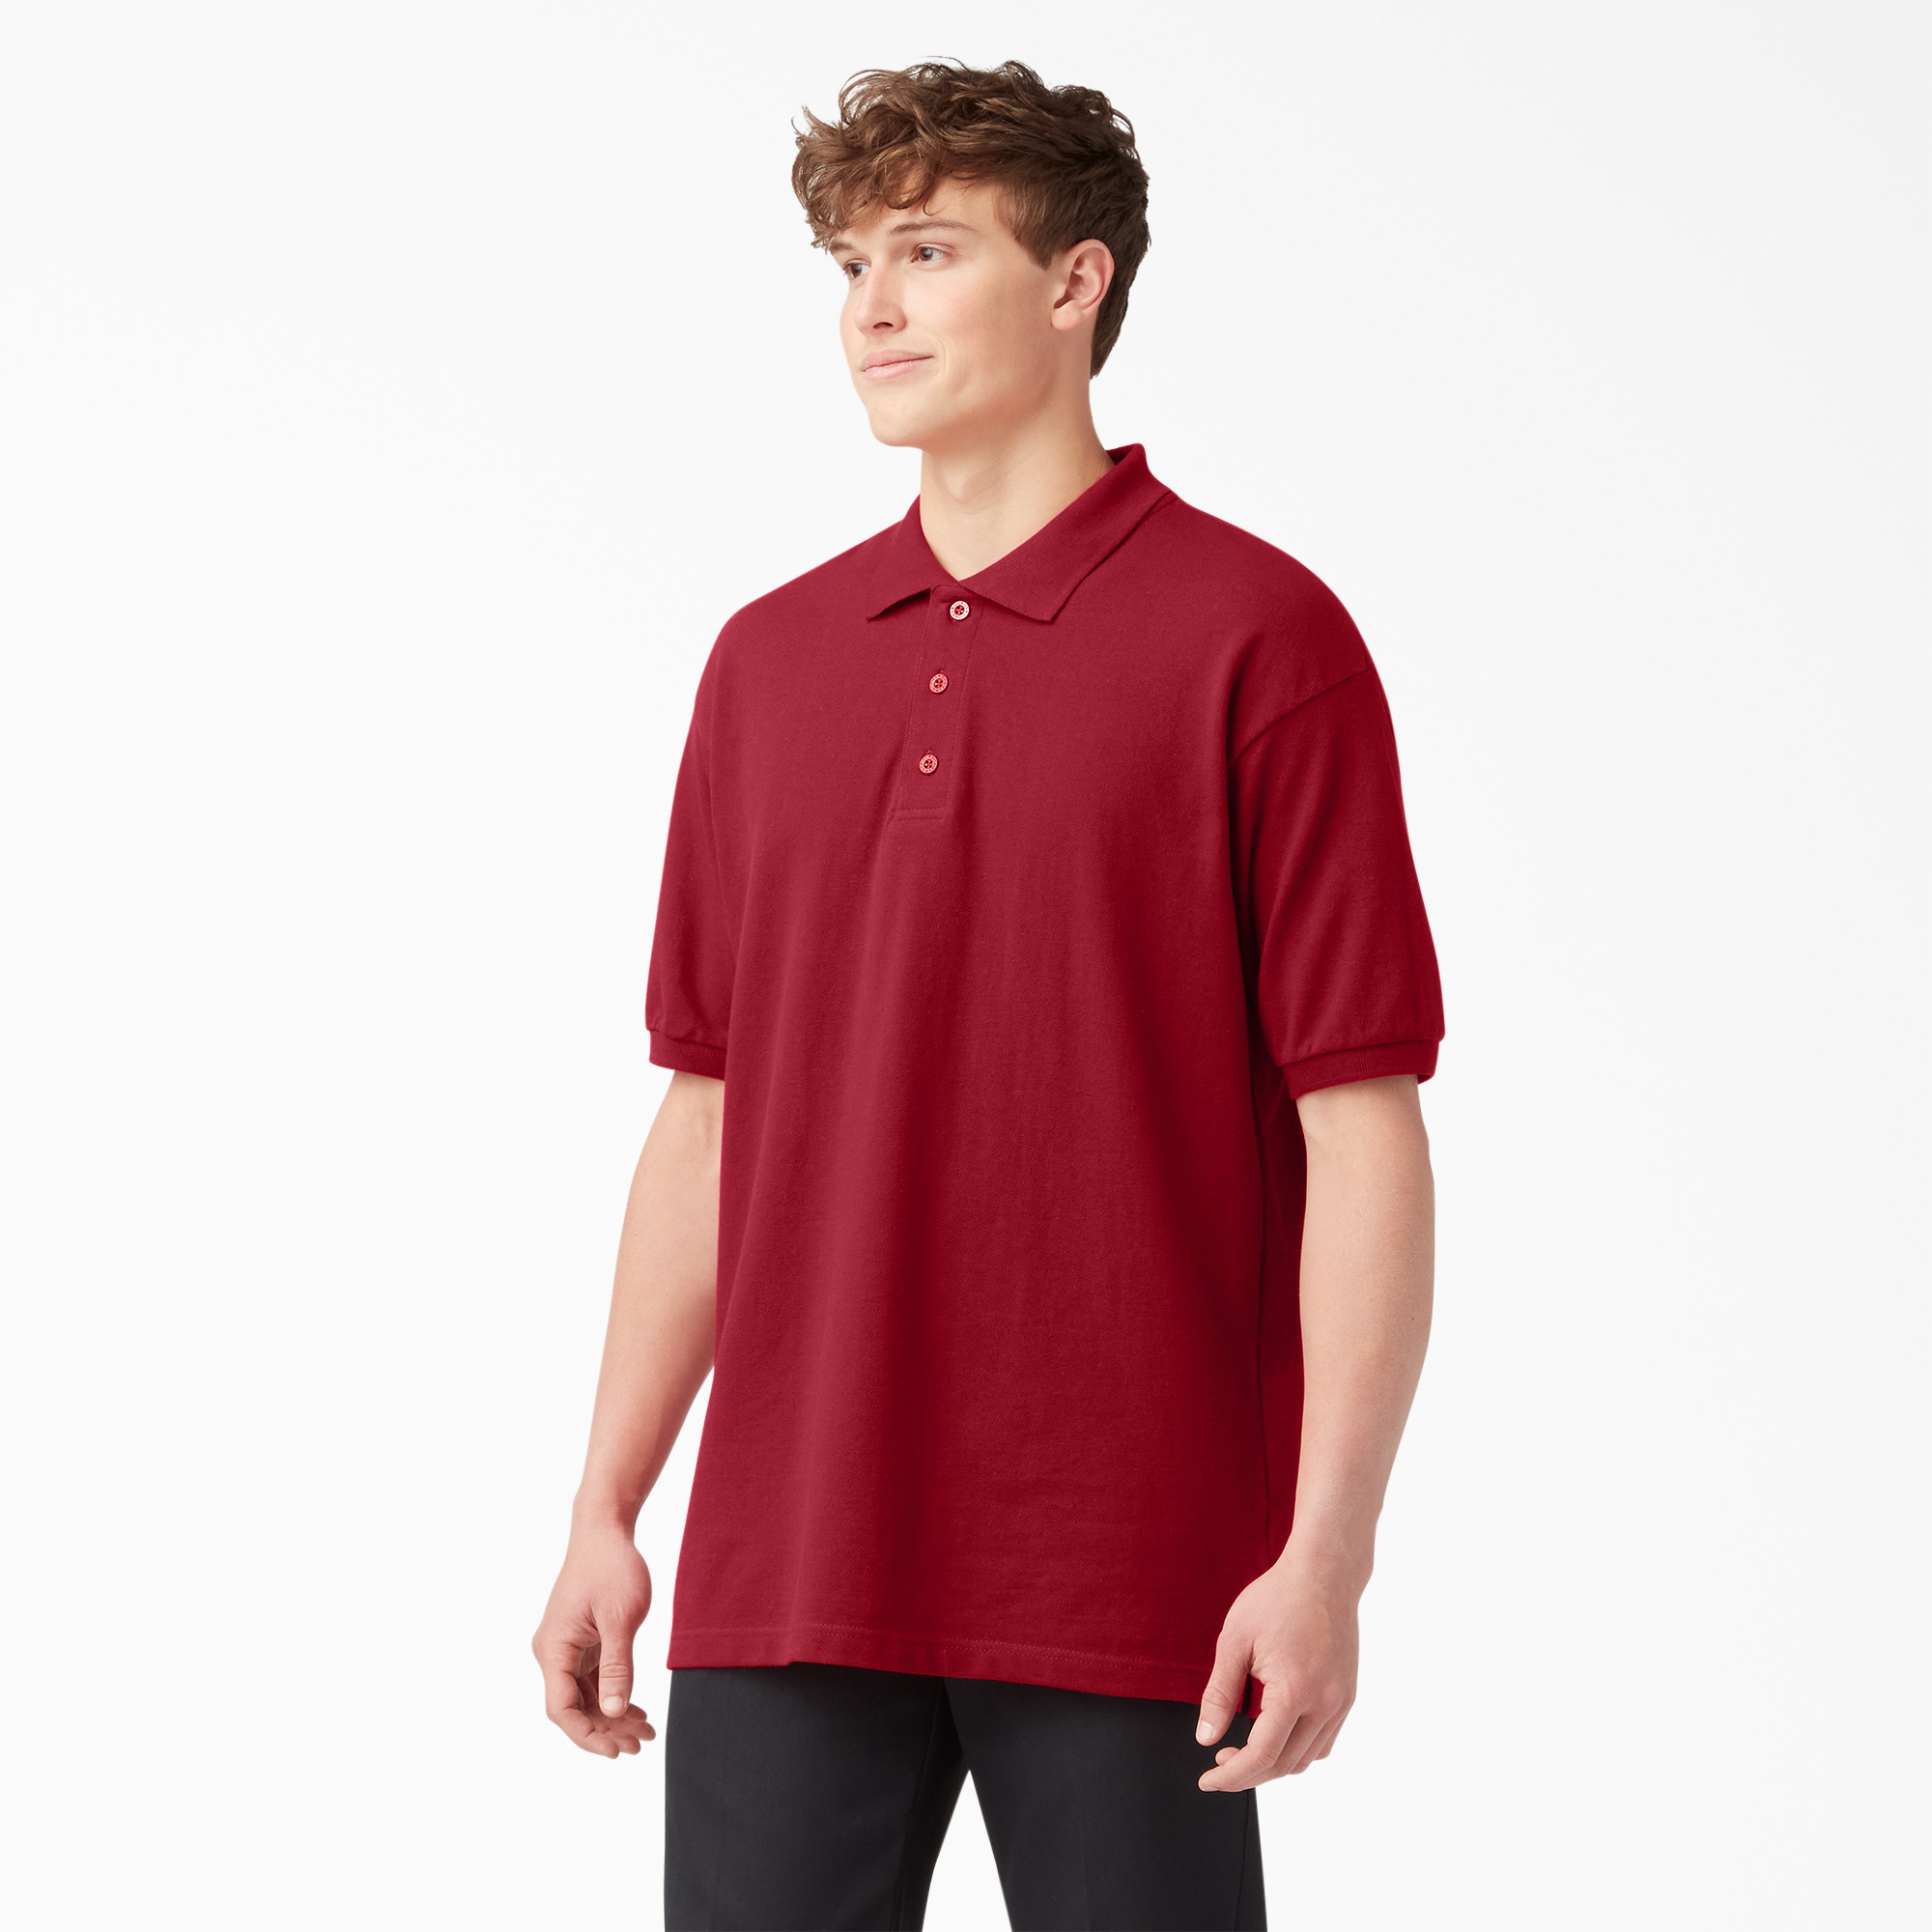 4xl red shirt